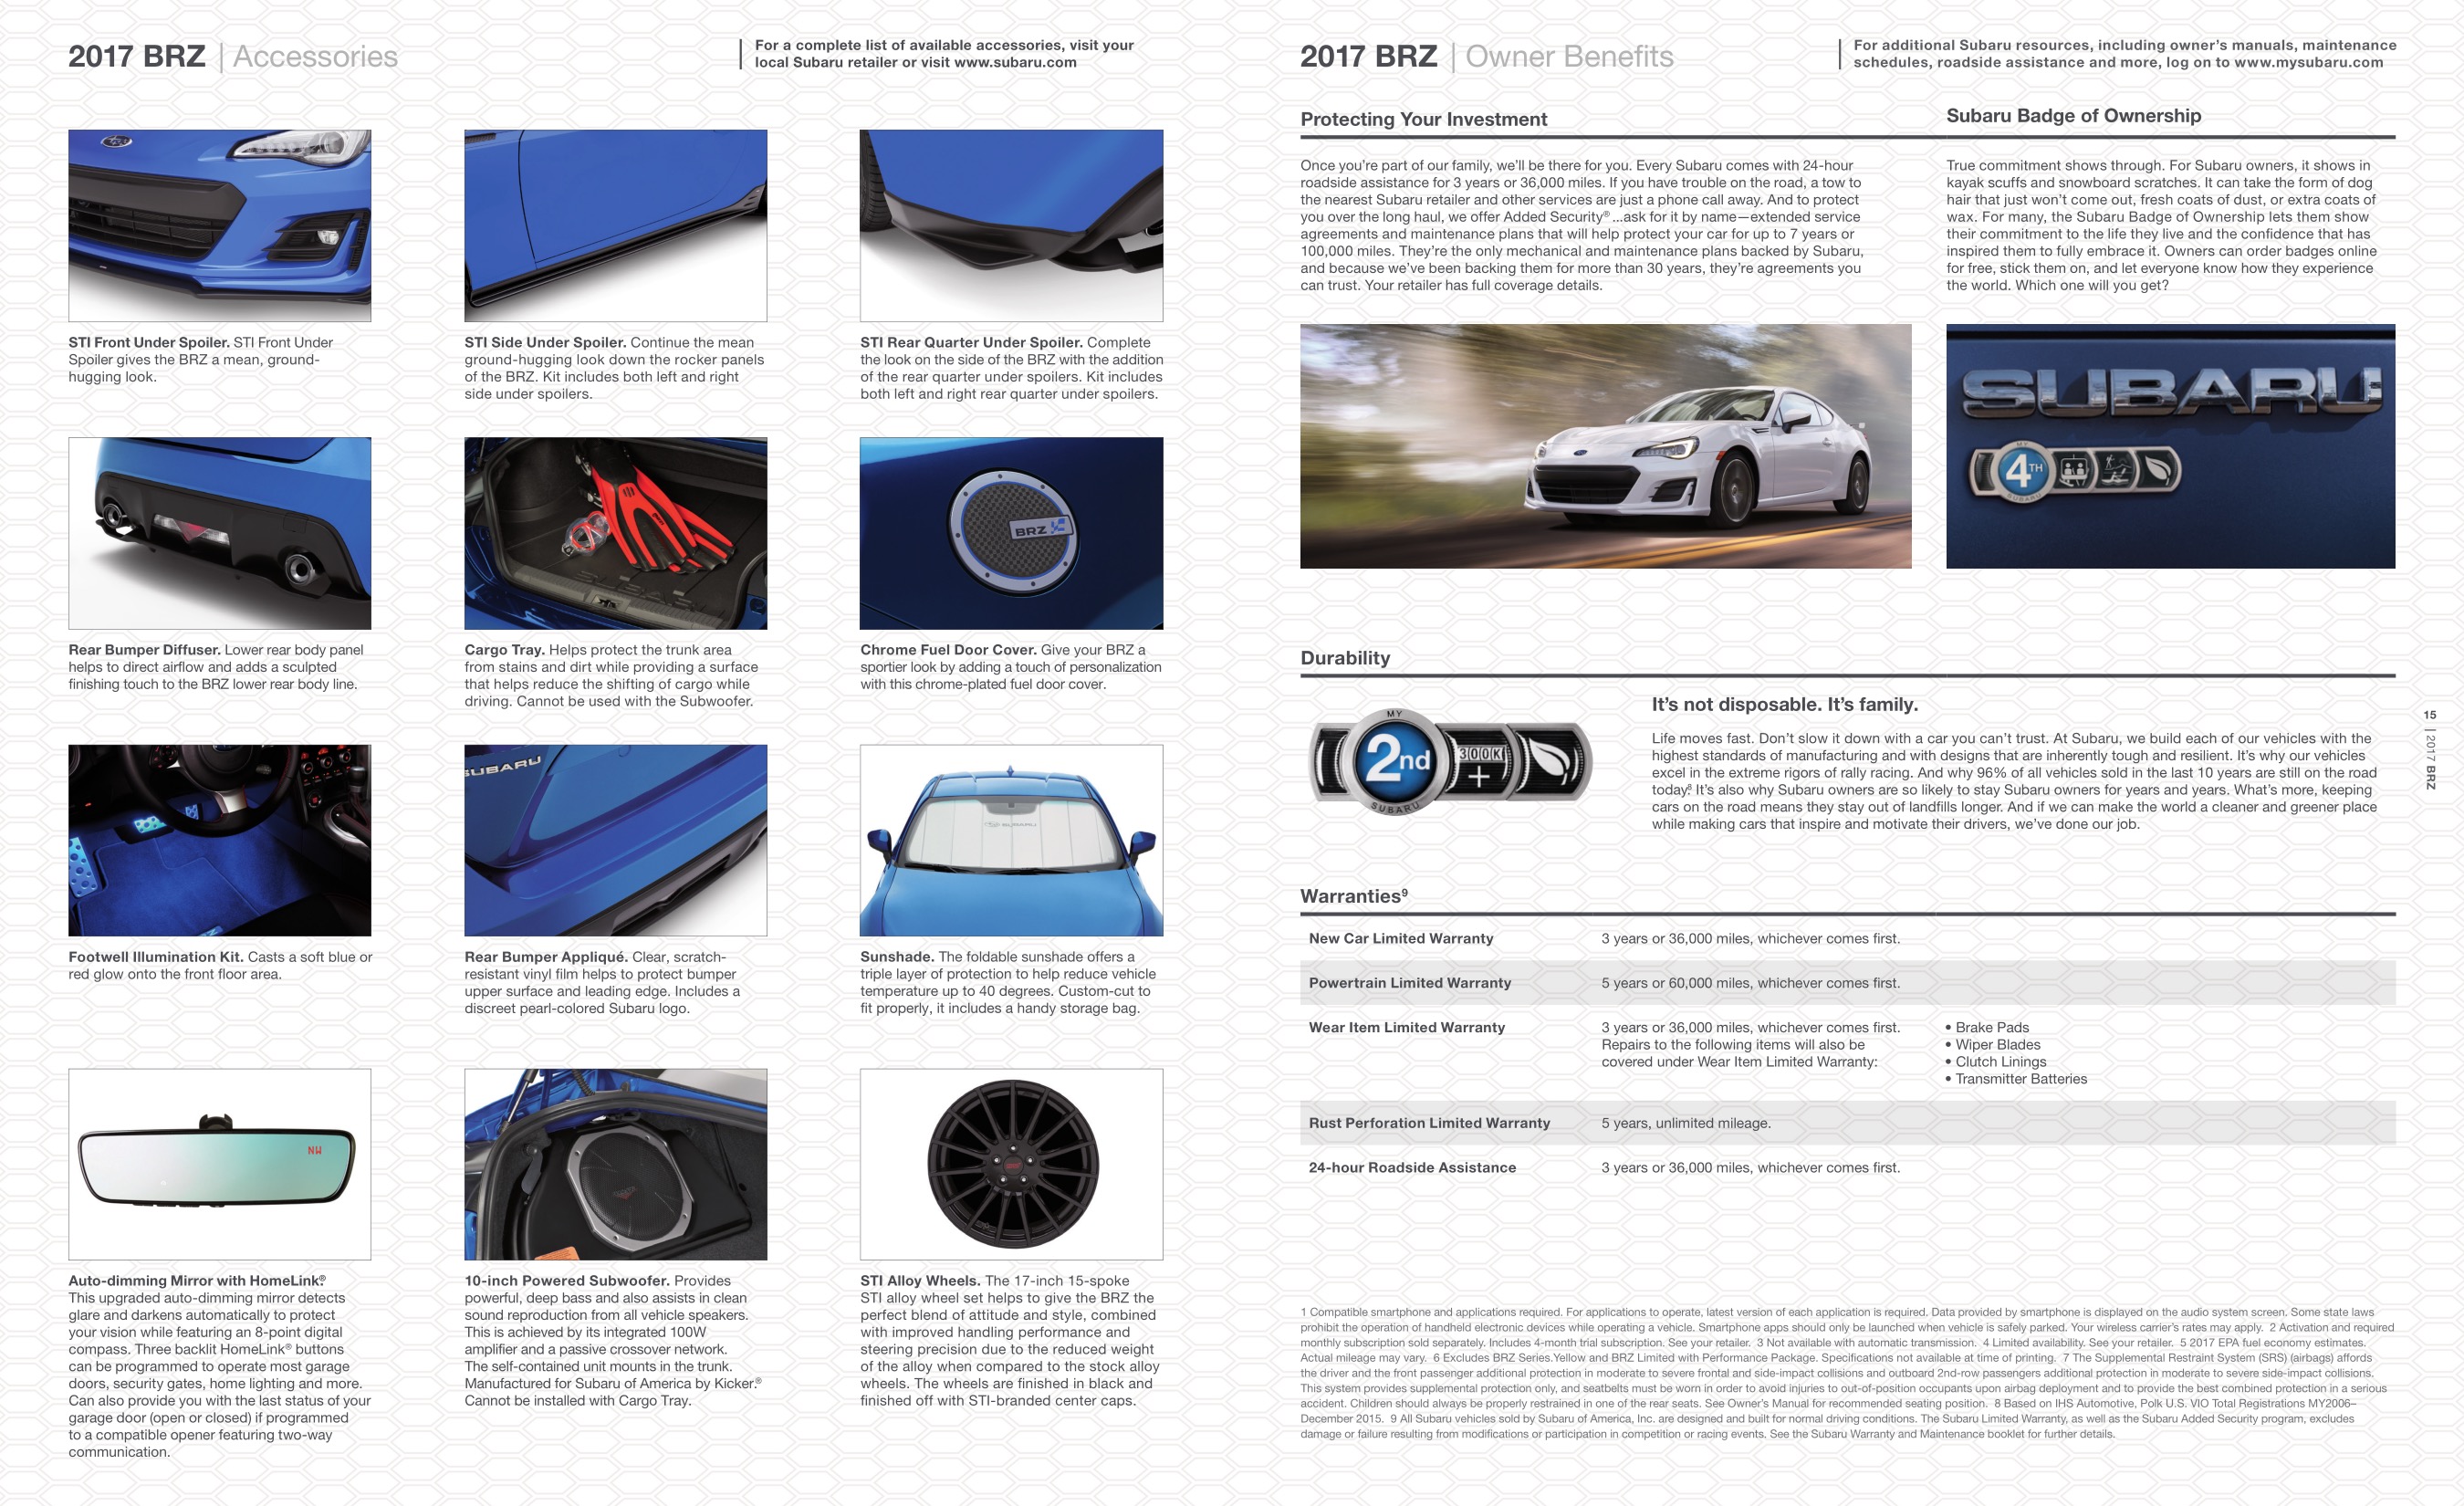 2017 Subaru BRZ Brochure Page 8